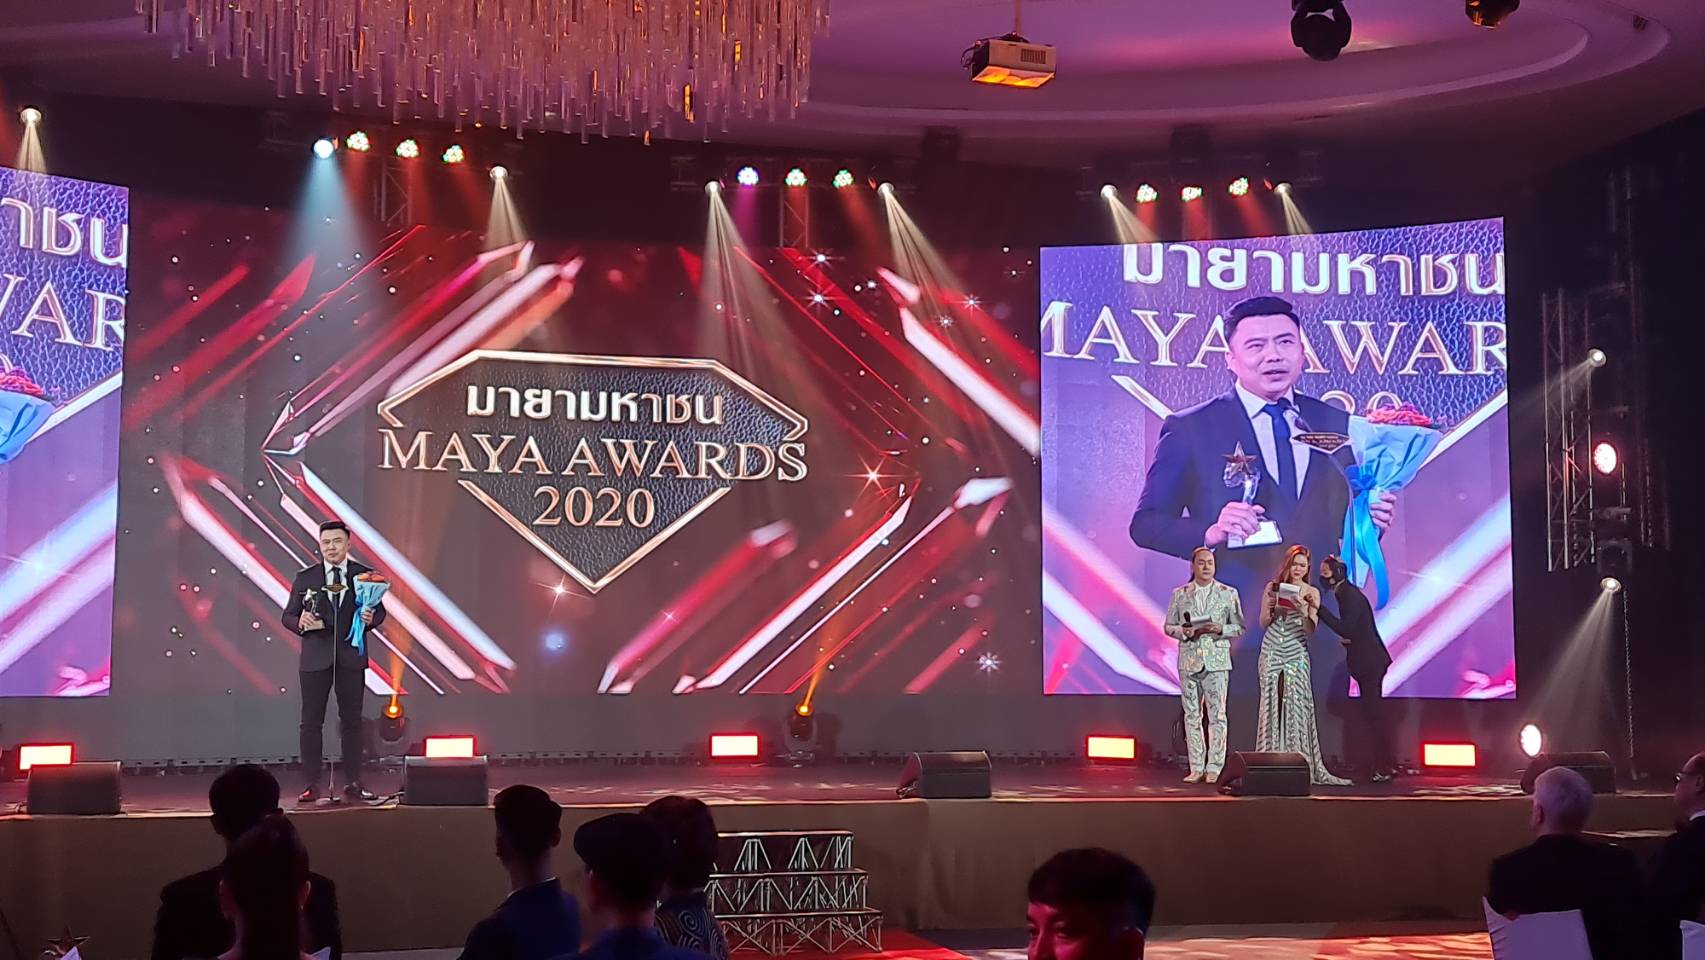 รางวัล Maya Awards 2020 (มายามหาชน ประจำปี 2563) ประเภทรางวัลผู้วิเคราะห์ข่าวดีเด่น บรรจง ชีวมงคลกานต์